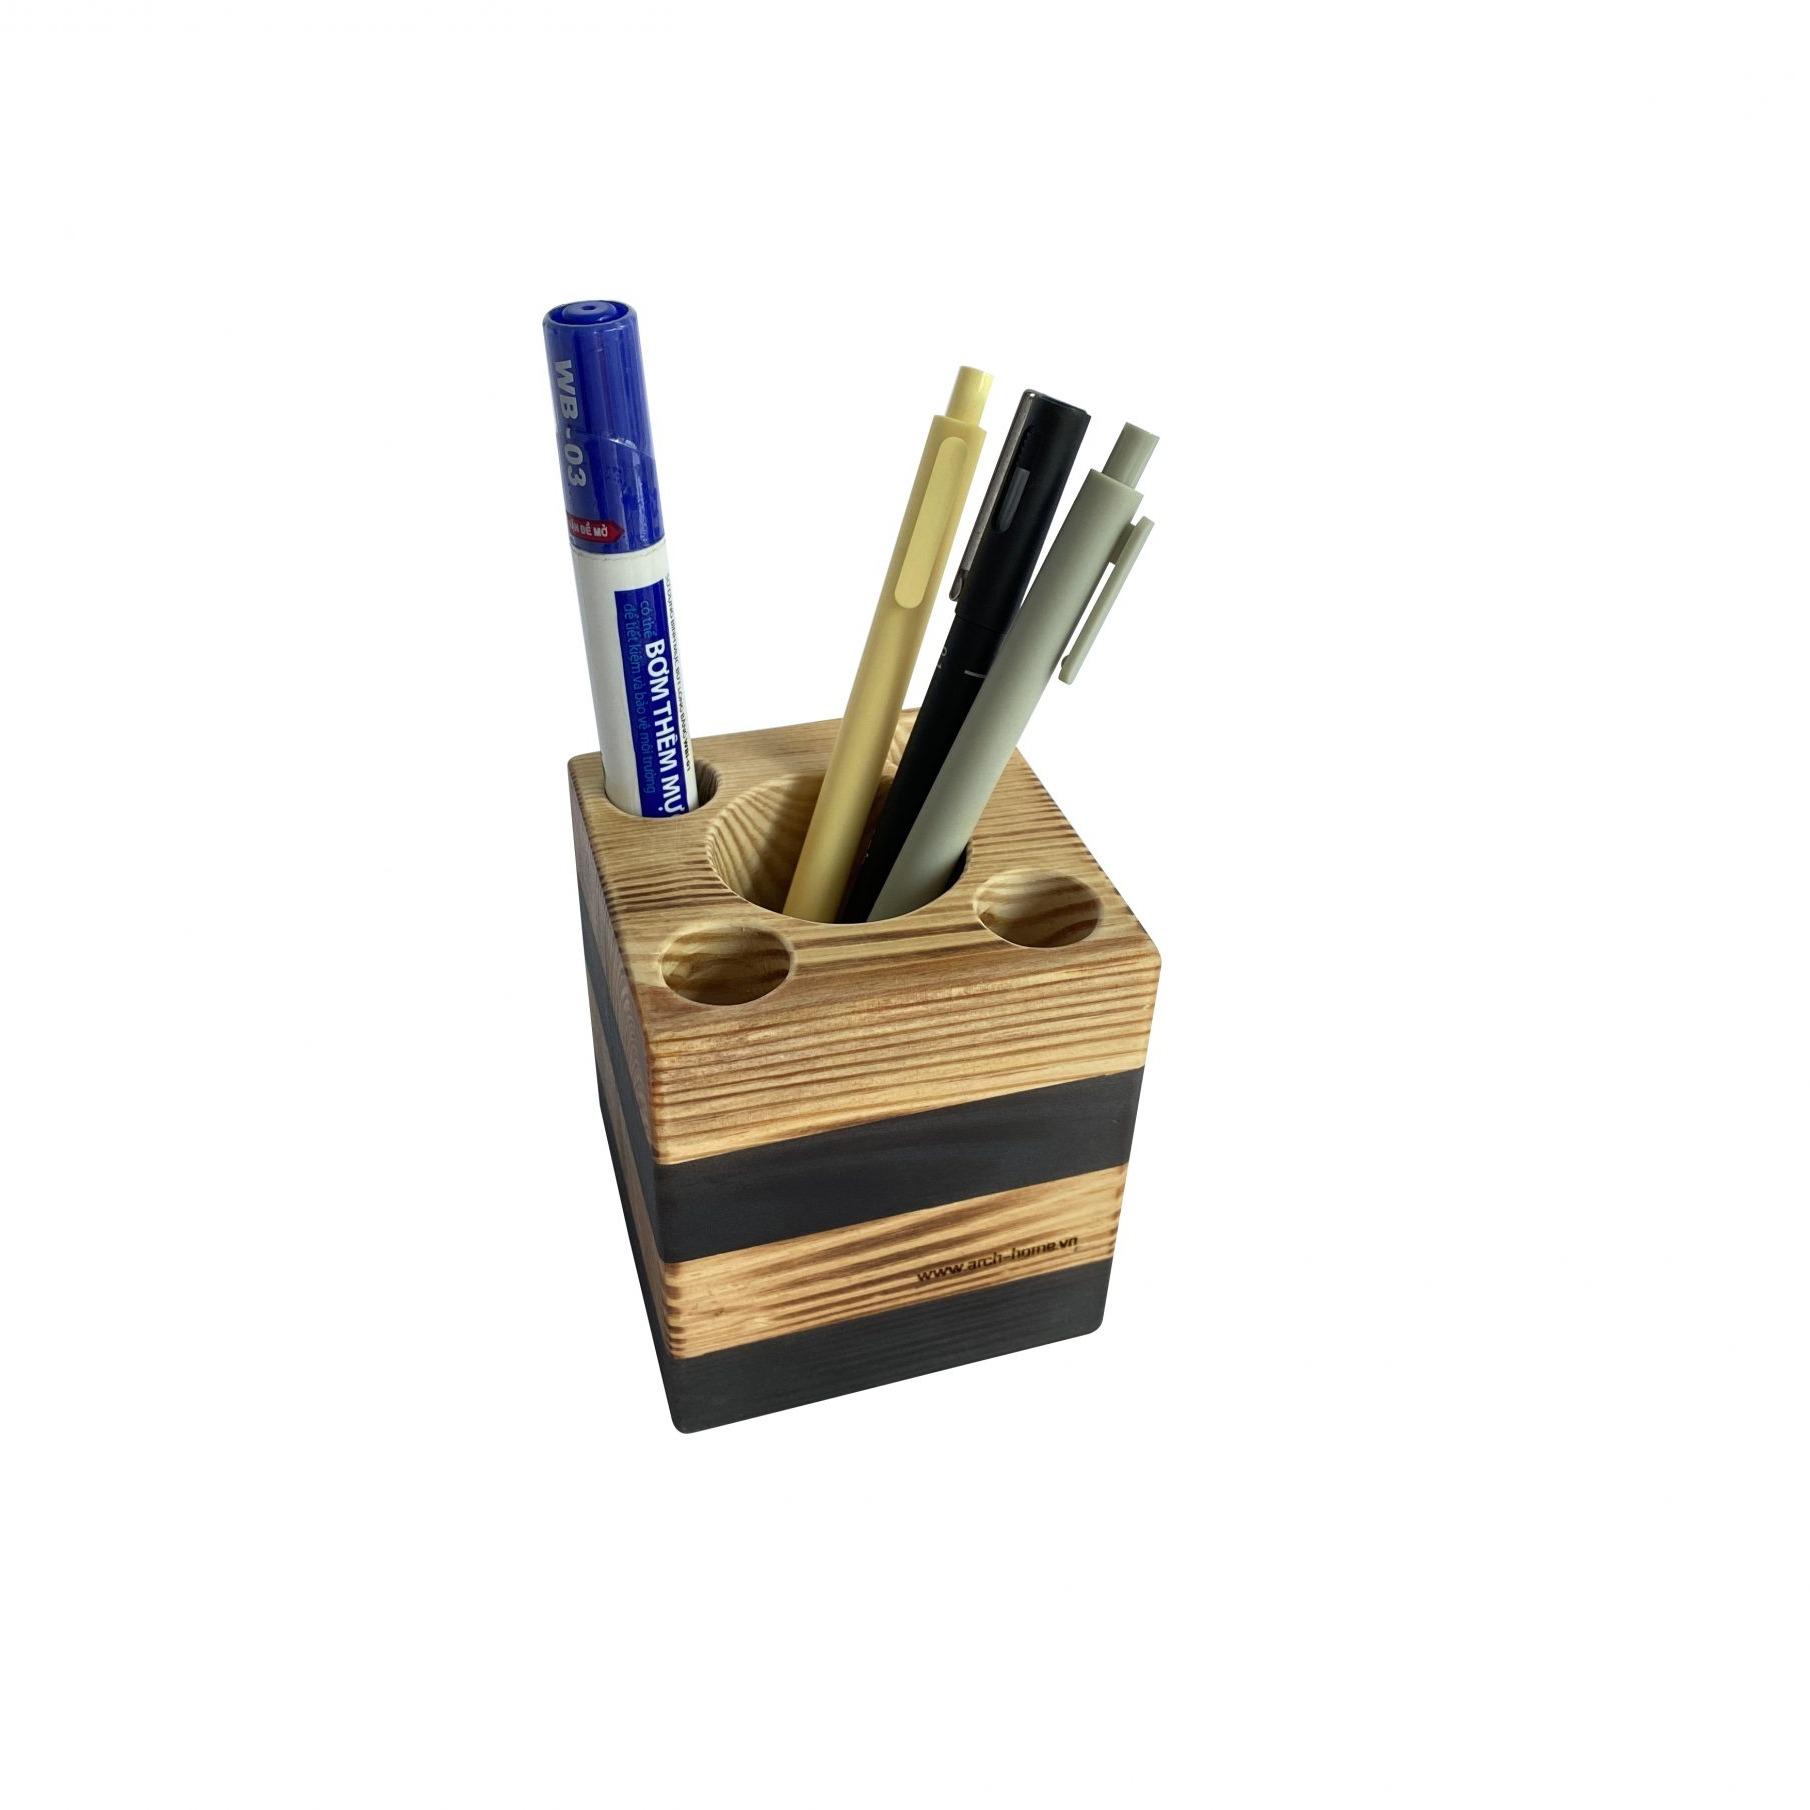 Hộp khay ống đựng cắm bút bằng gỗ THÔNG  MỸ để bàn Arch &amp; Home cao cấp dành cho bàn học, văn phòng, quà tặng độc đáo (PH008)